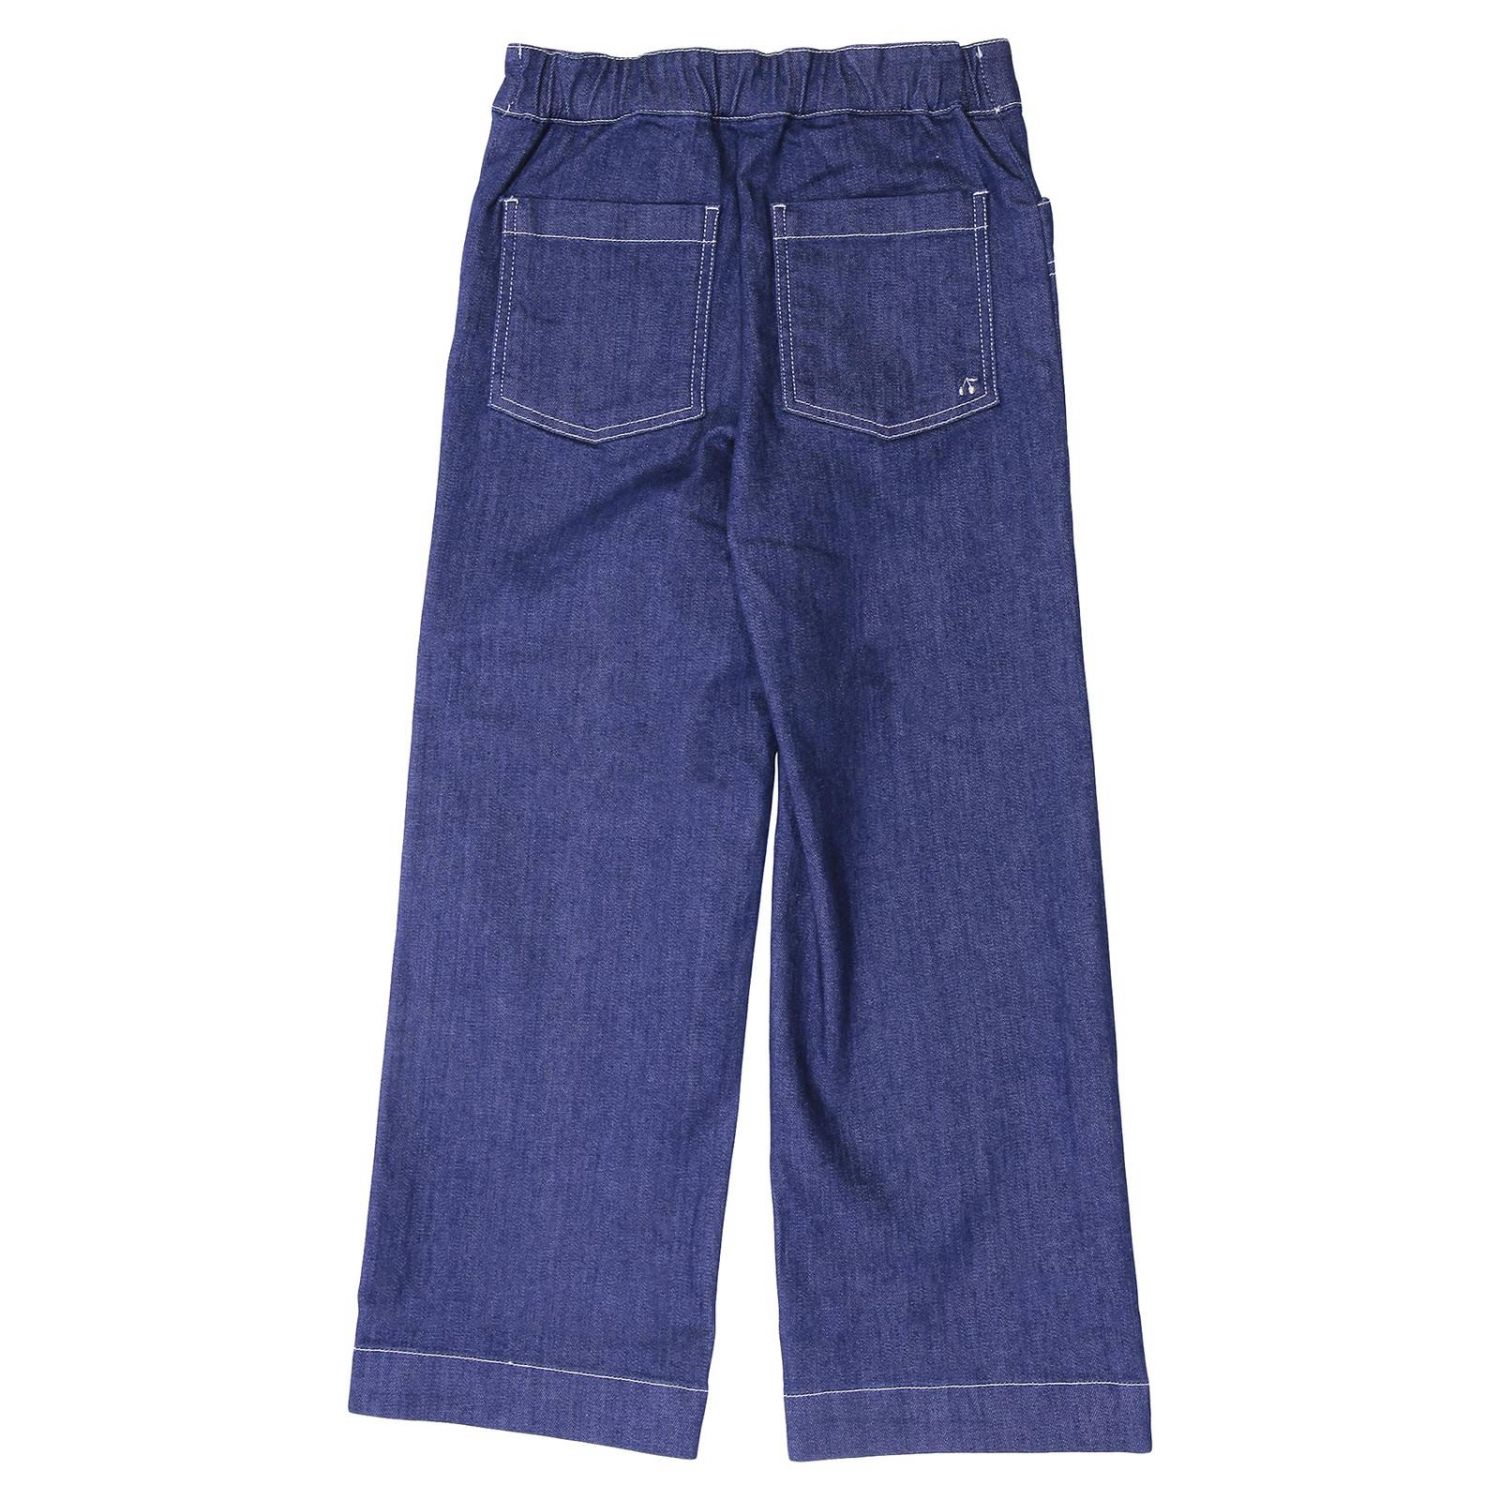 Bonpoint Outlet: Jeans kids | Jeans Bonpoint Kids Blue | Jeans Bonpoint ...